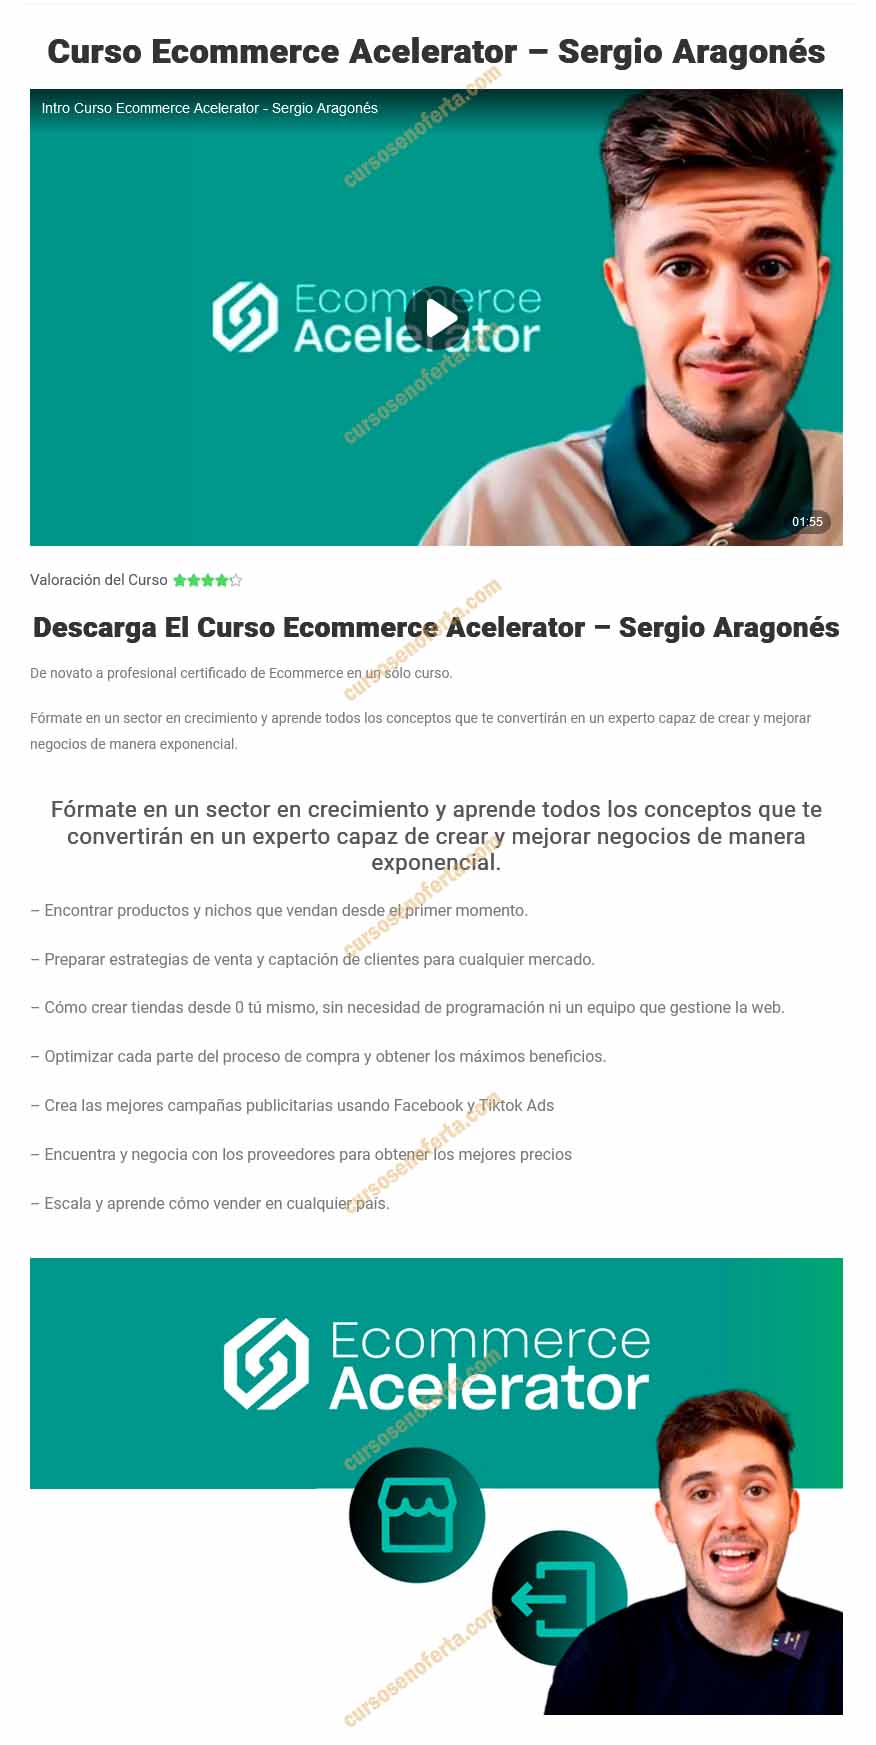 Ecommerce Accelerator - Sergio Aragones